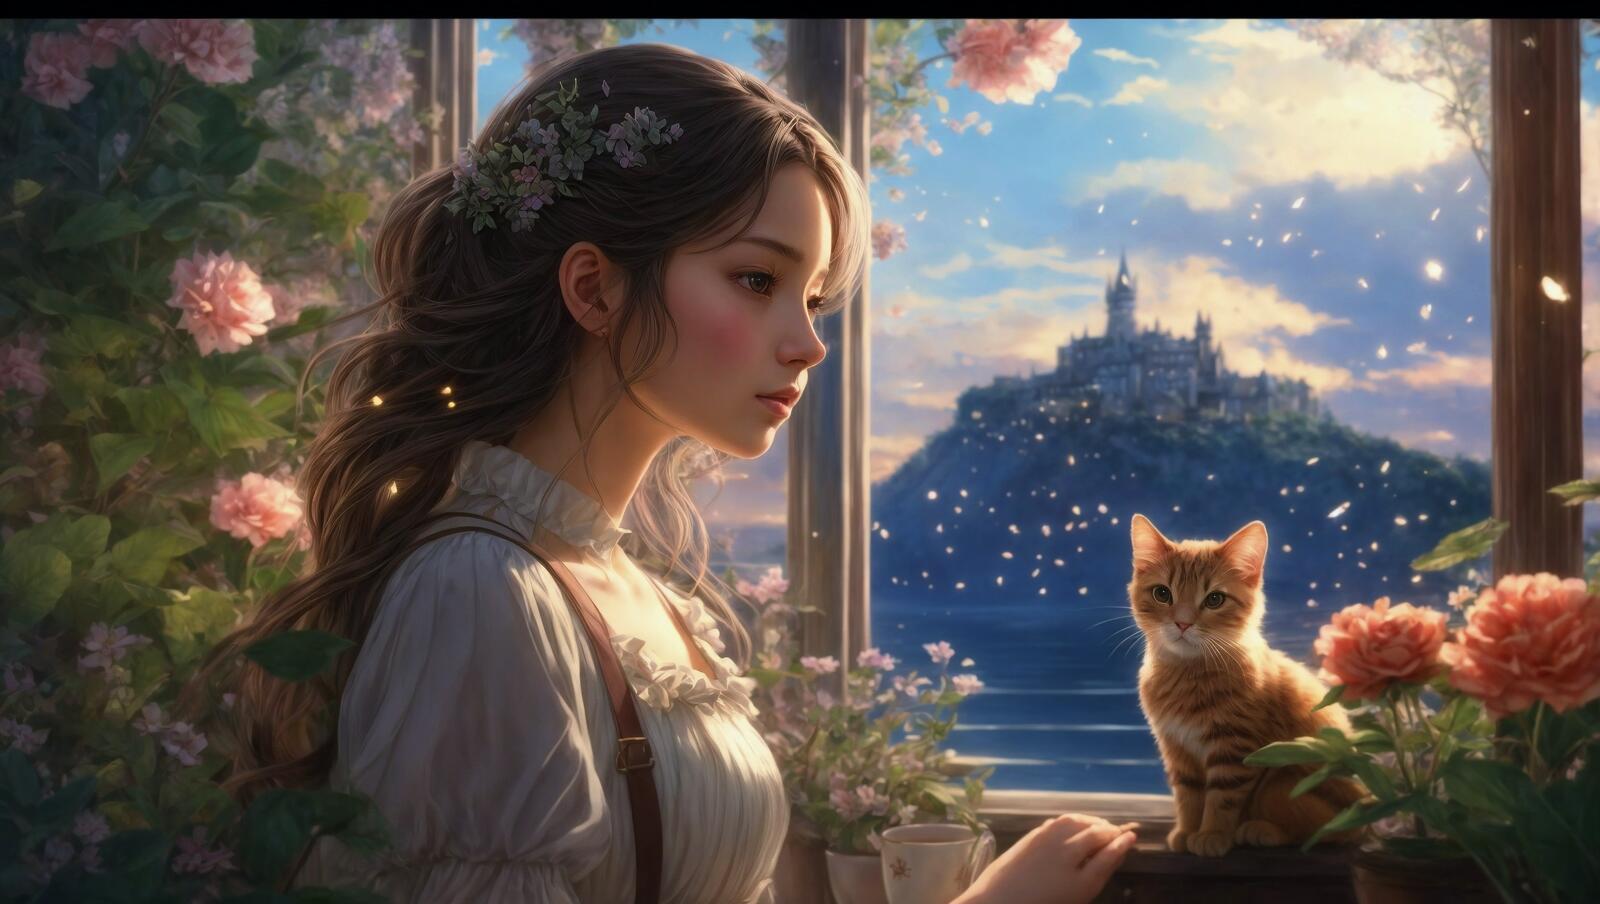 Бесплатное фото Молодая женщина держит кошку возле цветов